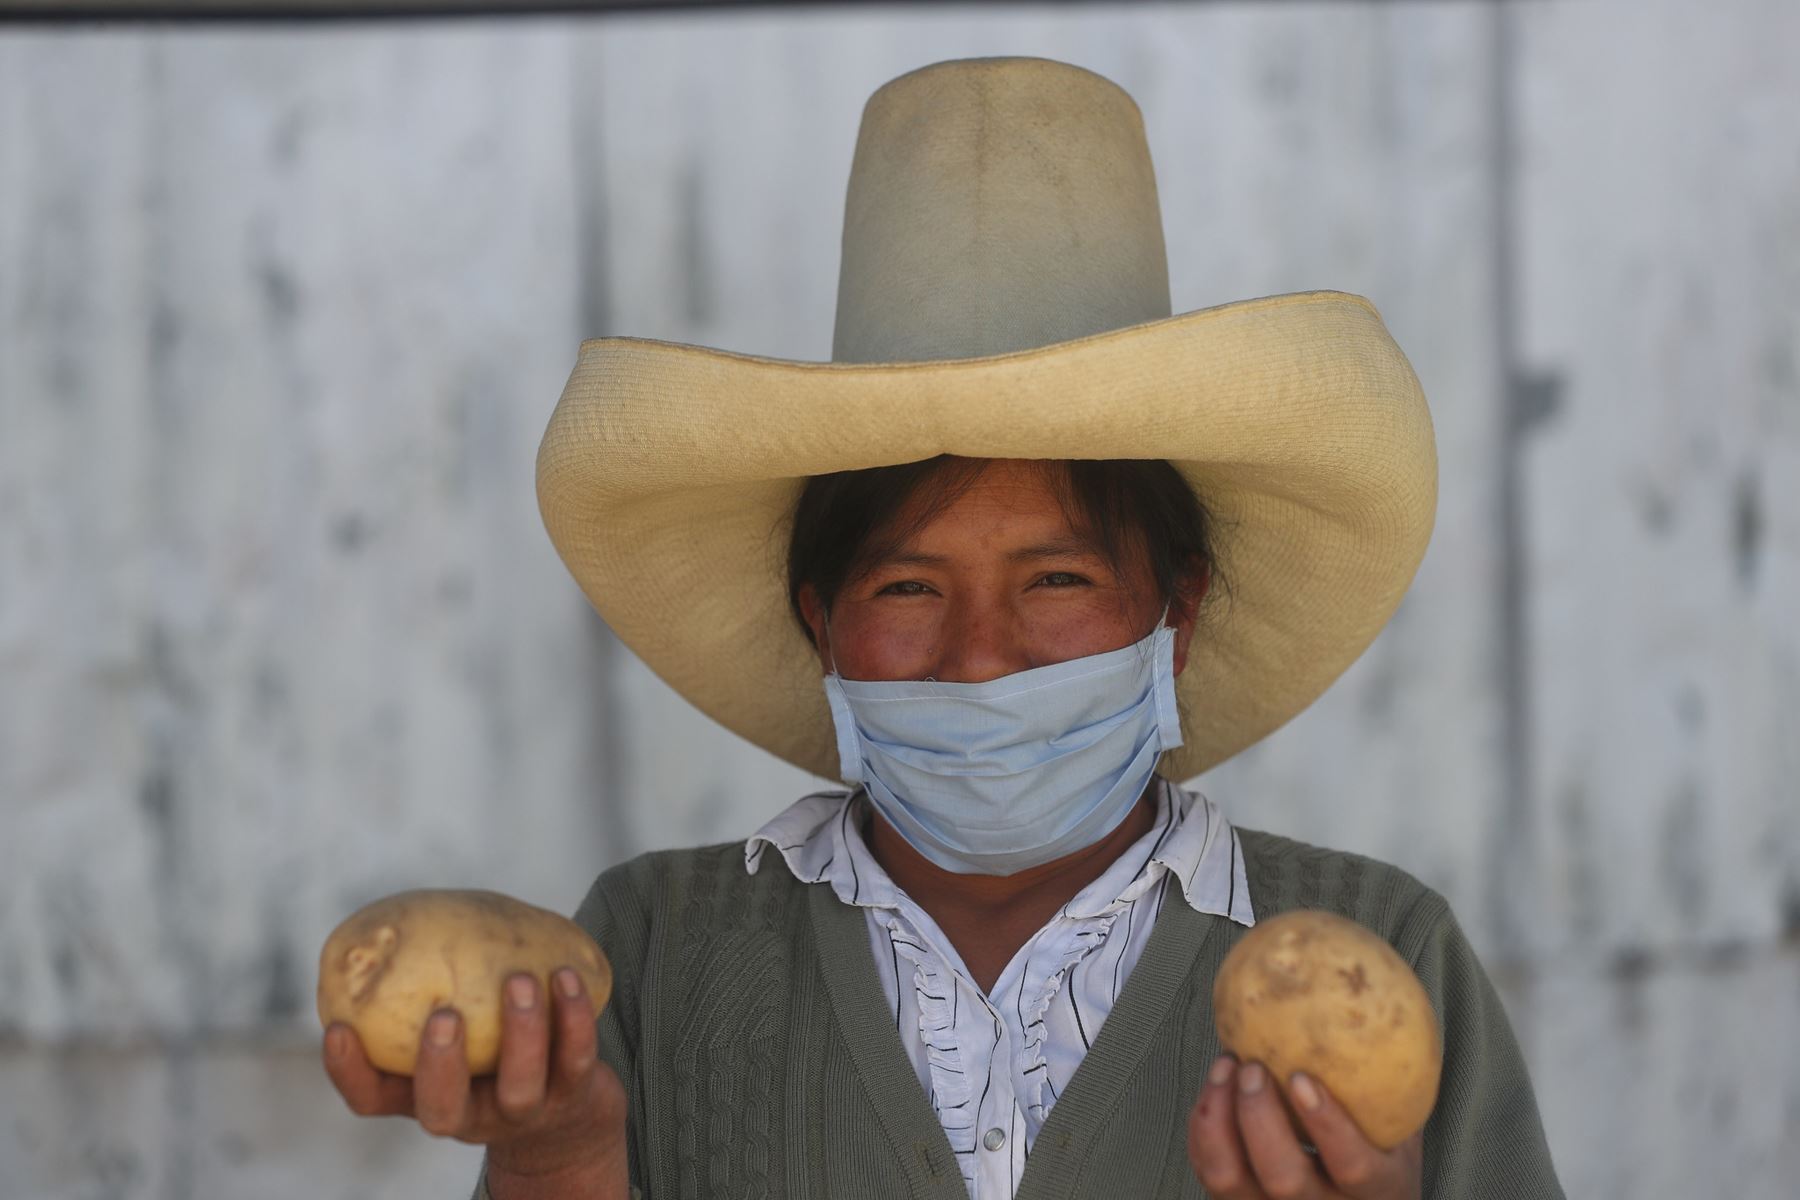 Con todas las medidas de bioseguridad para evitar la propagación del COVID-19, 130 productores agrícolas y ganaderos ofertarán sus productos en el nuevo Mercado de Productores Agropecuarios de Cajamarca. La población podrá llevar los alimentos del campo directamente a su hogar. Foto: ANDINA/PCM